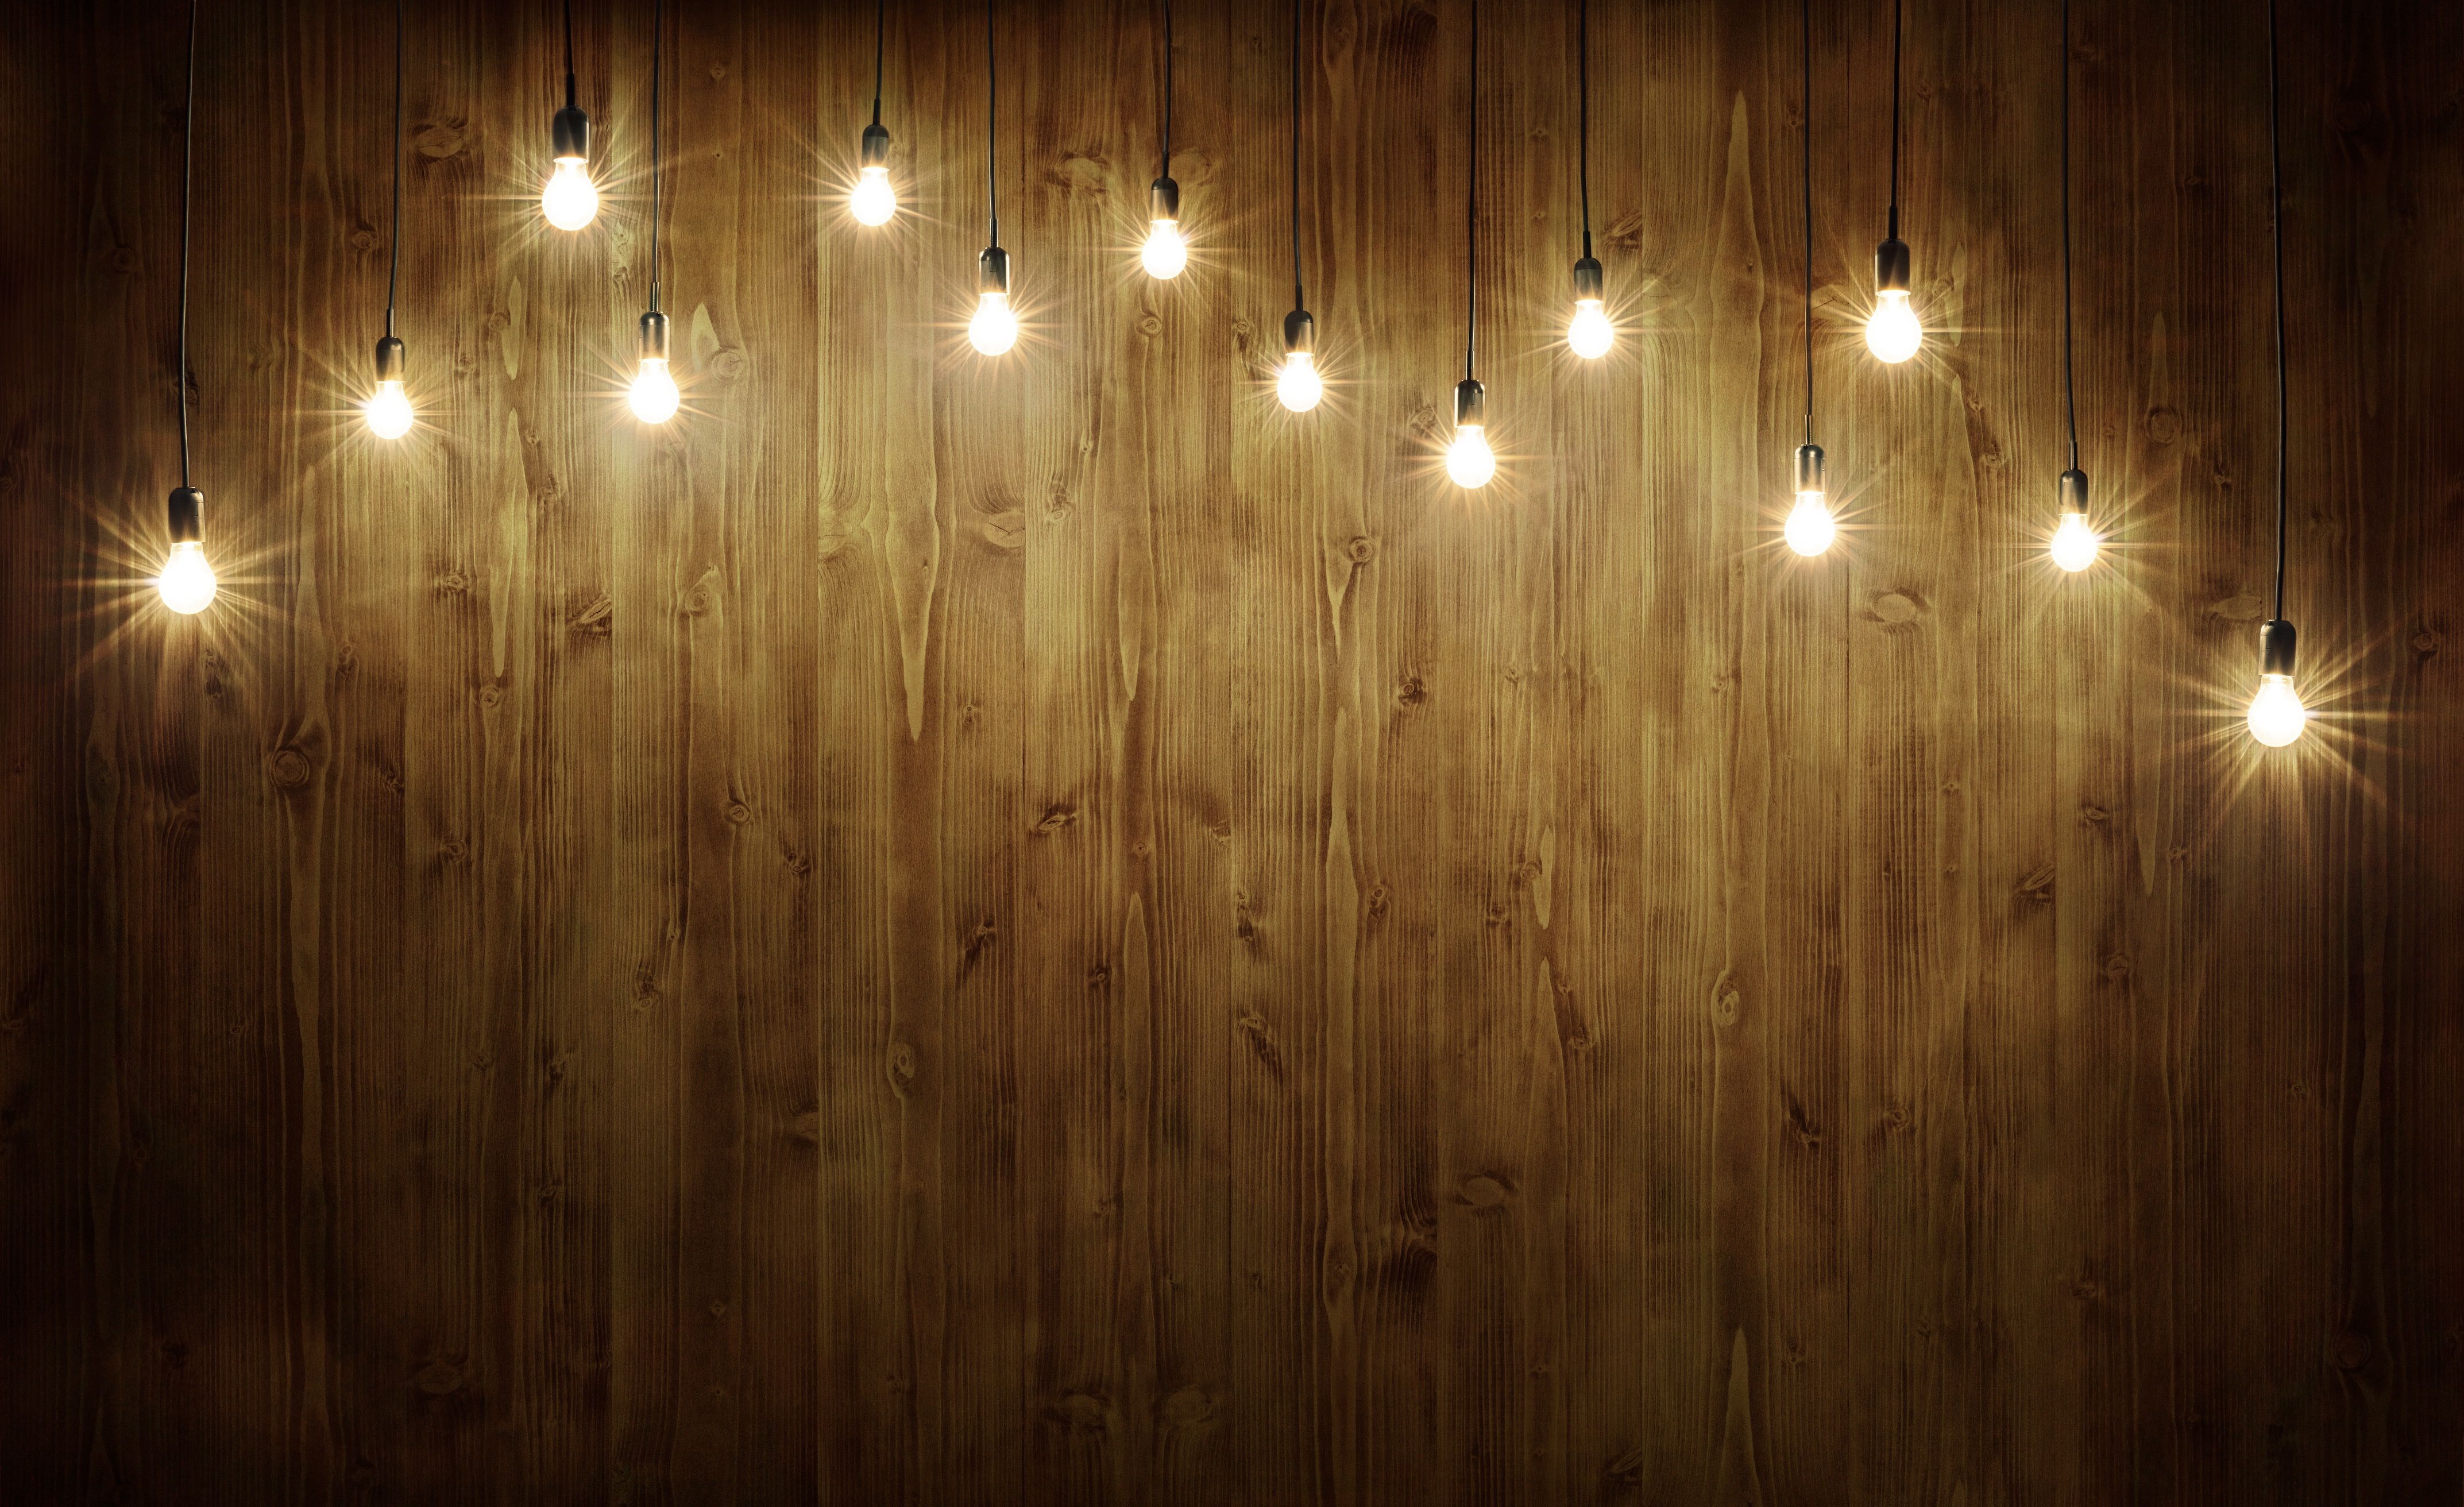 Trong hình ảnh này, nền gỗ kết hợp với những bóng đèn đẹp mắt để tạo ra một không gian sang trọng và ấm áp. Hãy xem ảnh để thấy cách ánh sáng phản chiếu trên bề mặt gỗ và tạo ra một không gian thật đặc biệt.